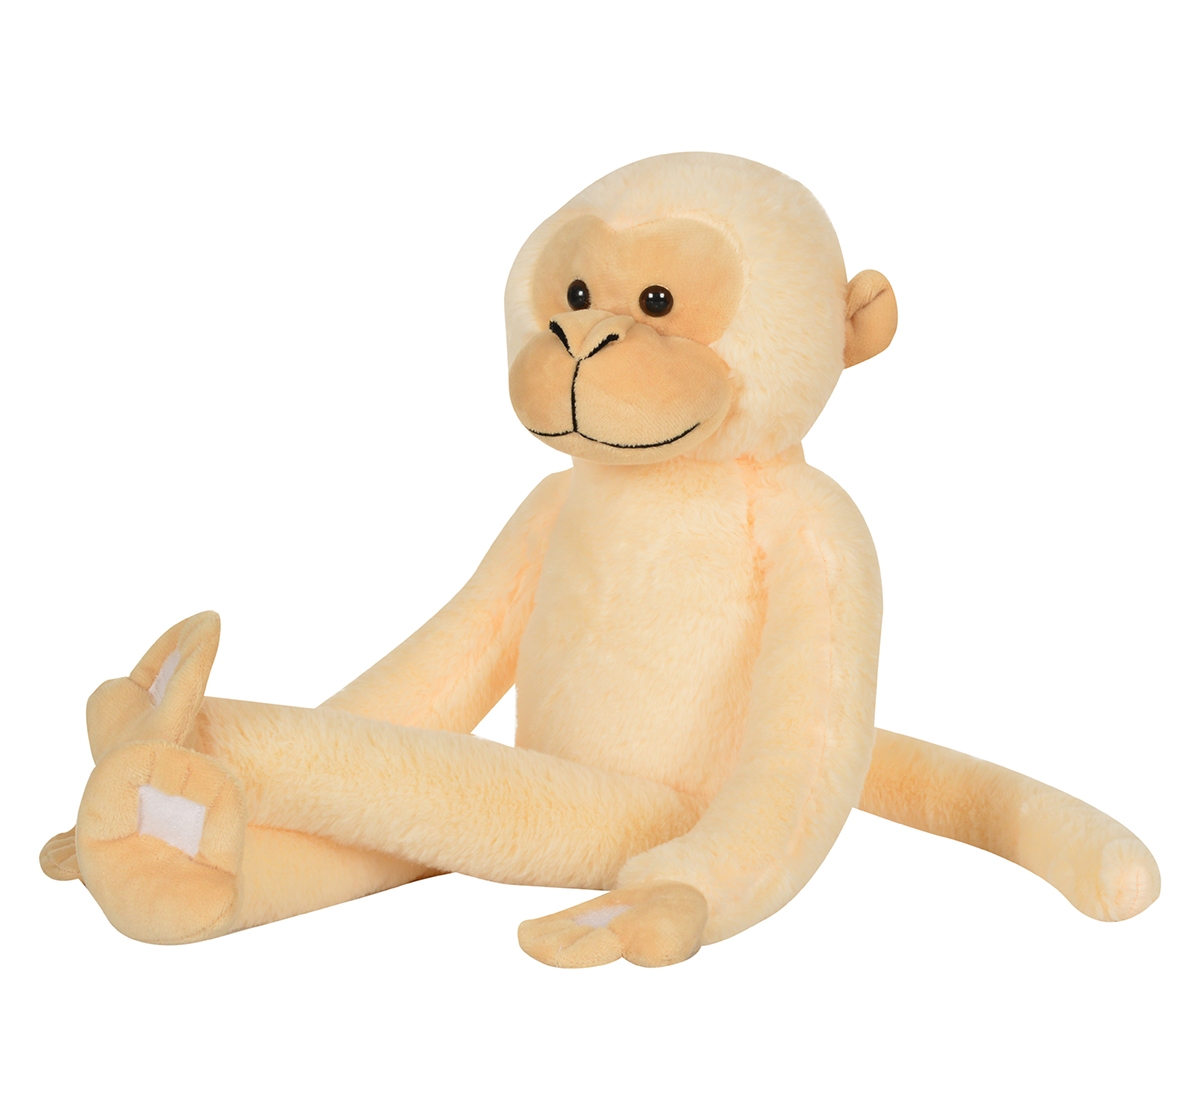 Mirada | Mirada 52cm hanging monkey soft toy Multicolor 3Y+ 0